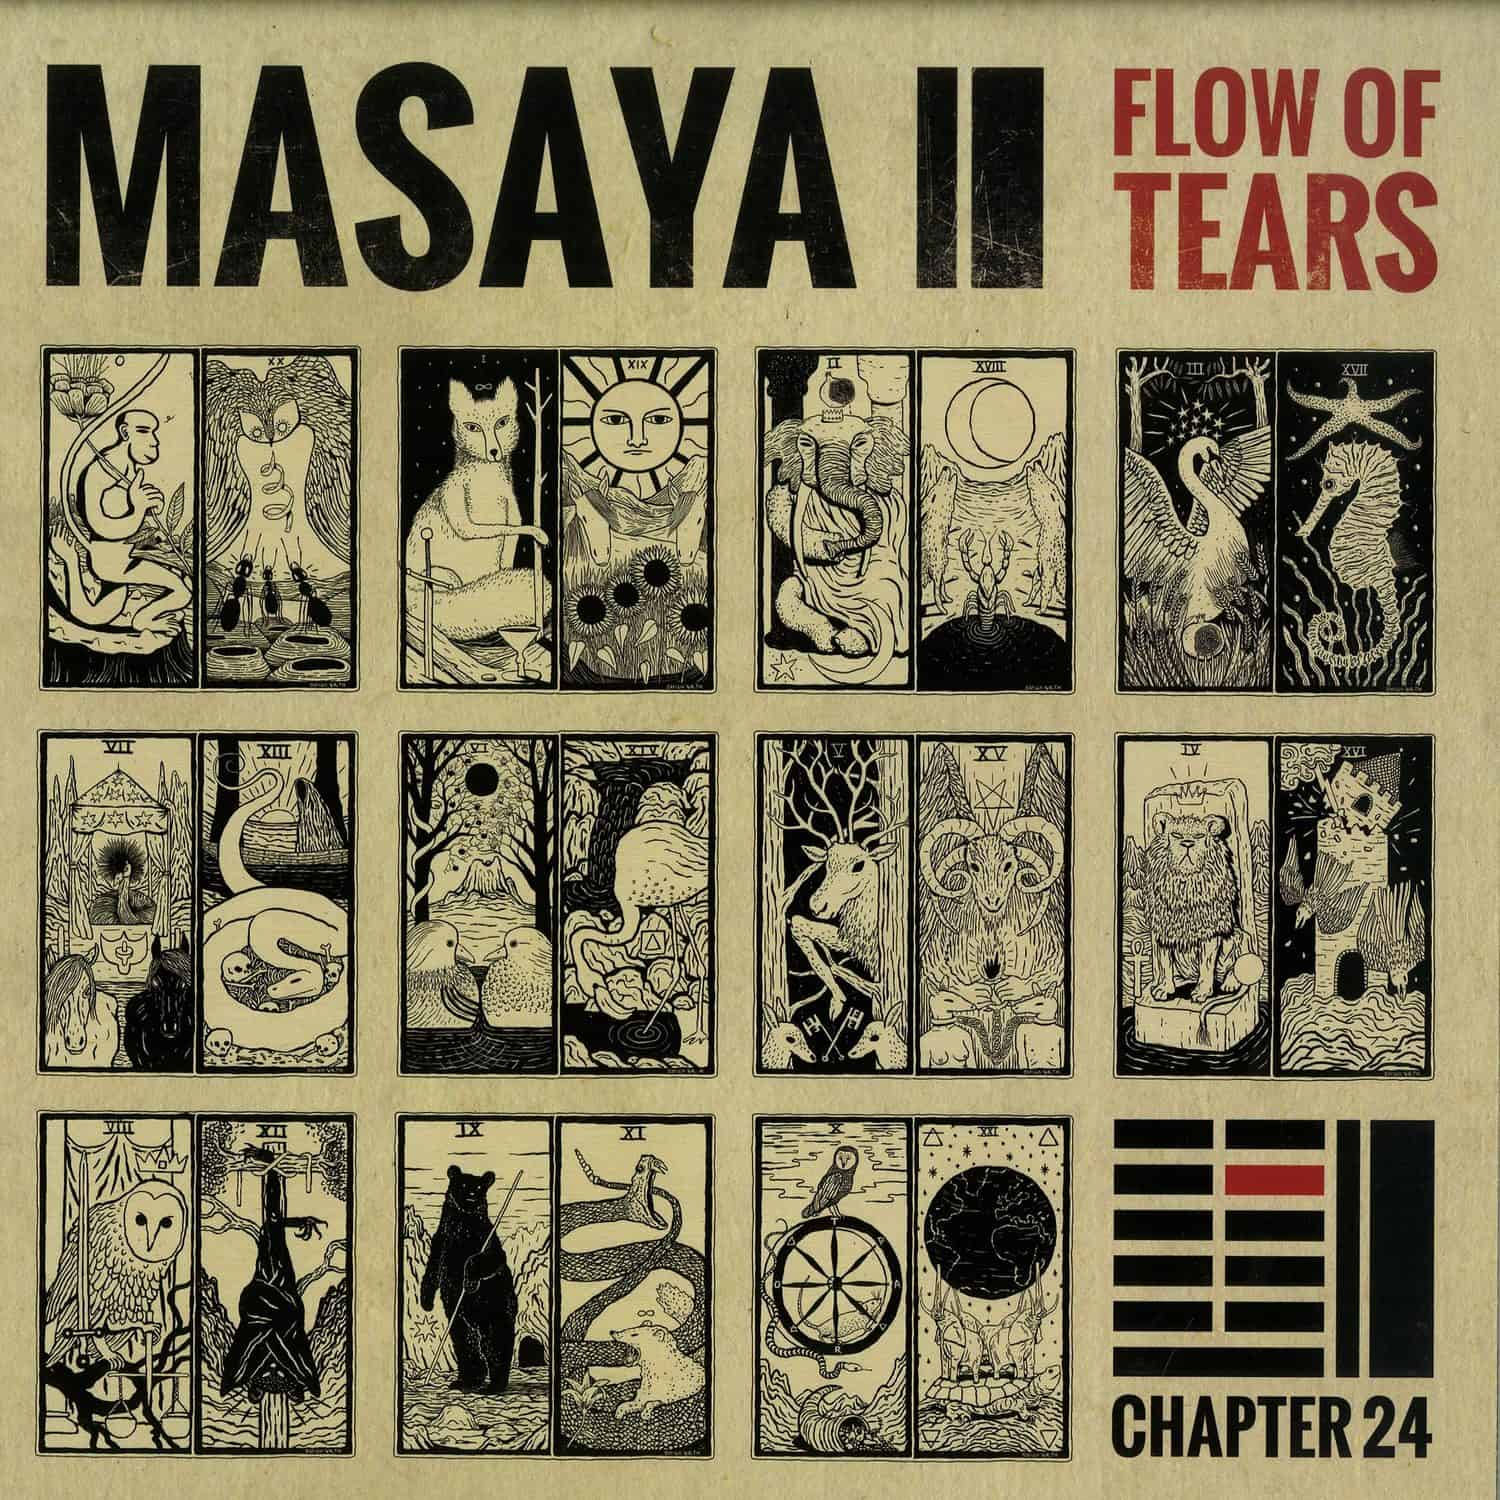 Masaya - FLOW OF TEARS